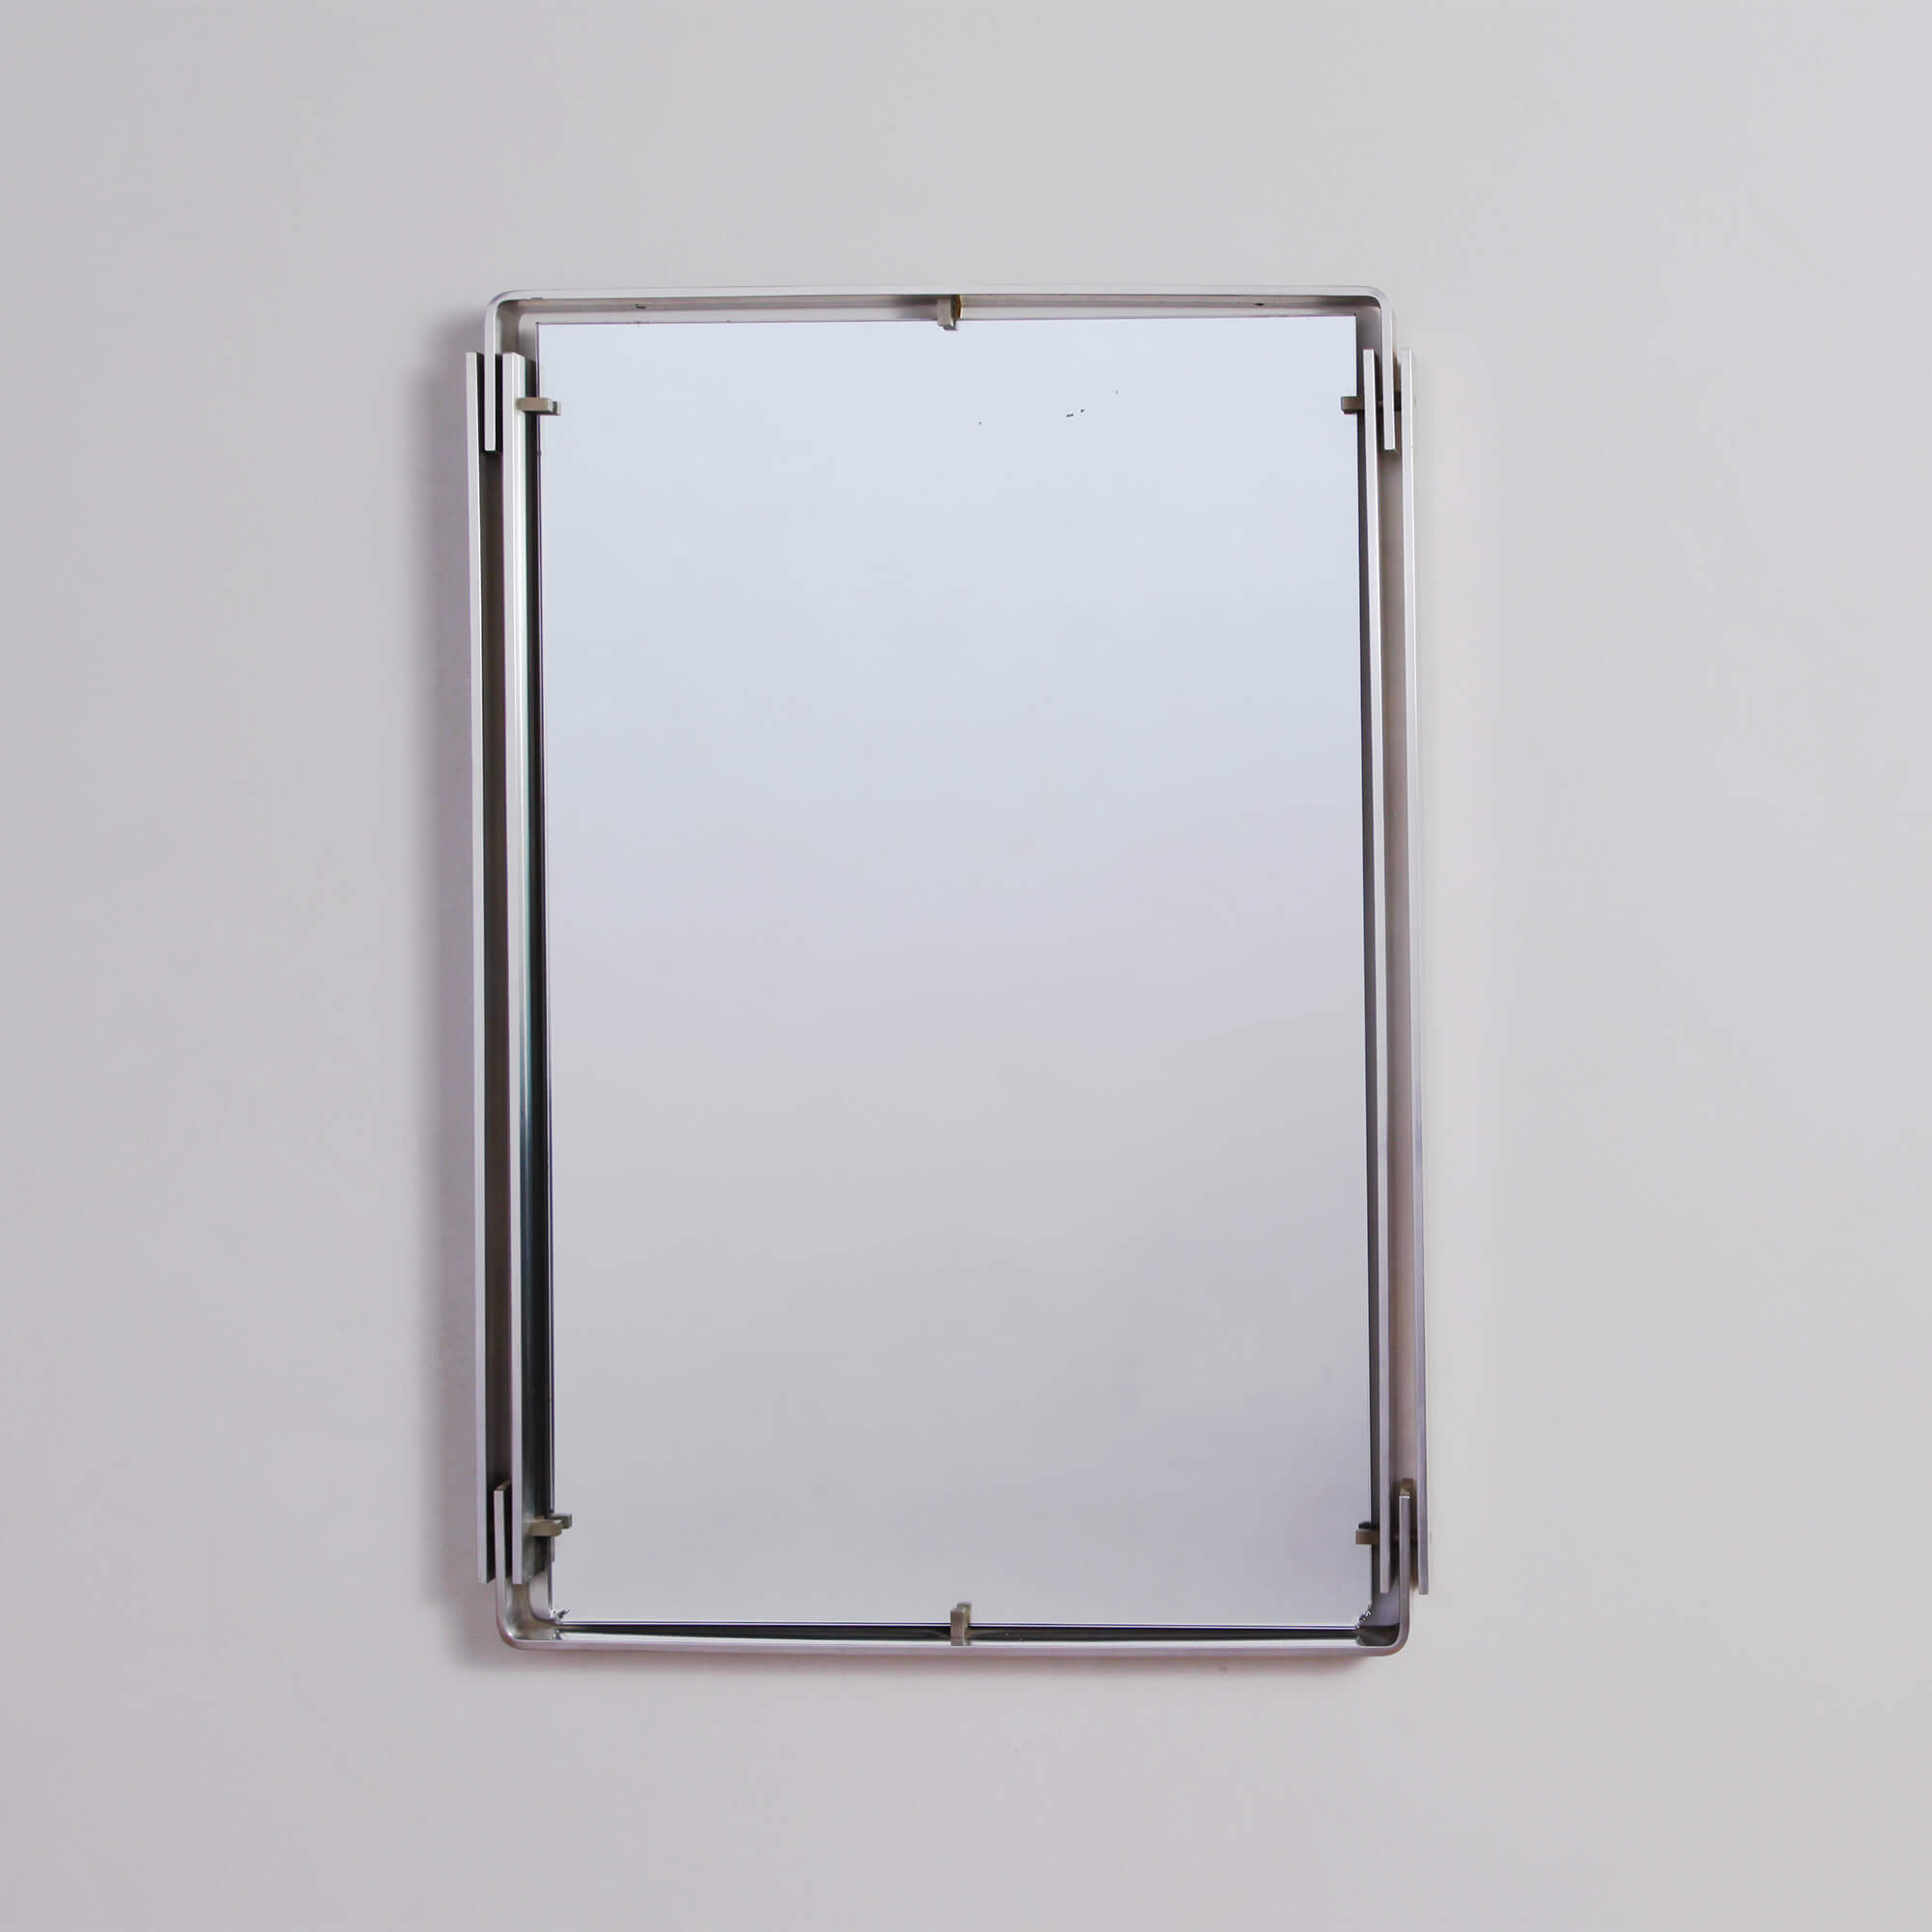 Minimalist Steel Wall Mirror